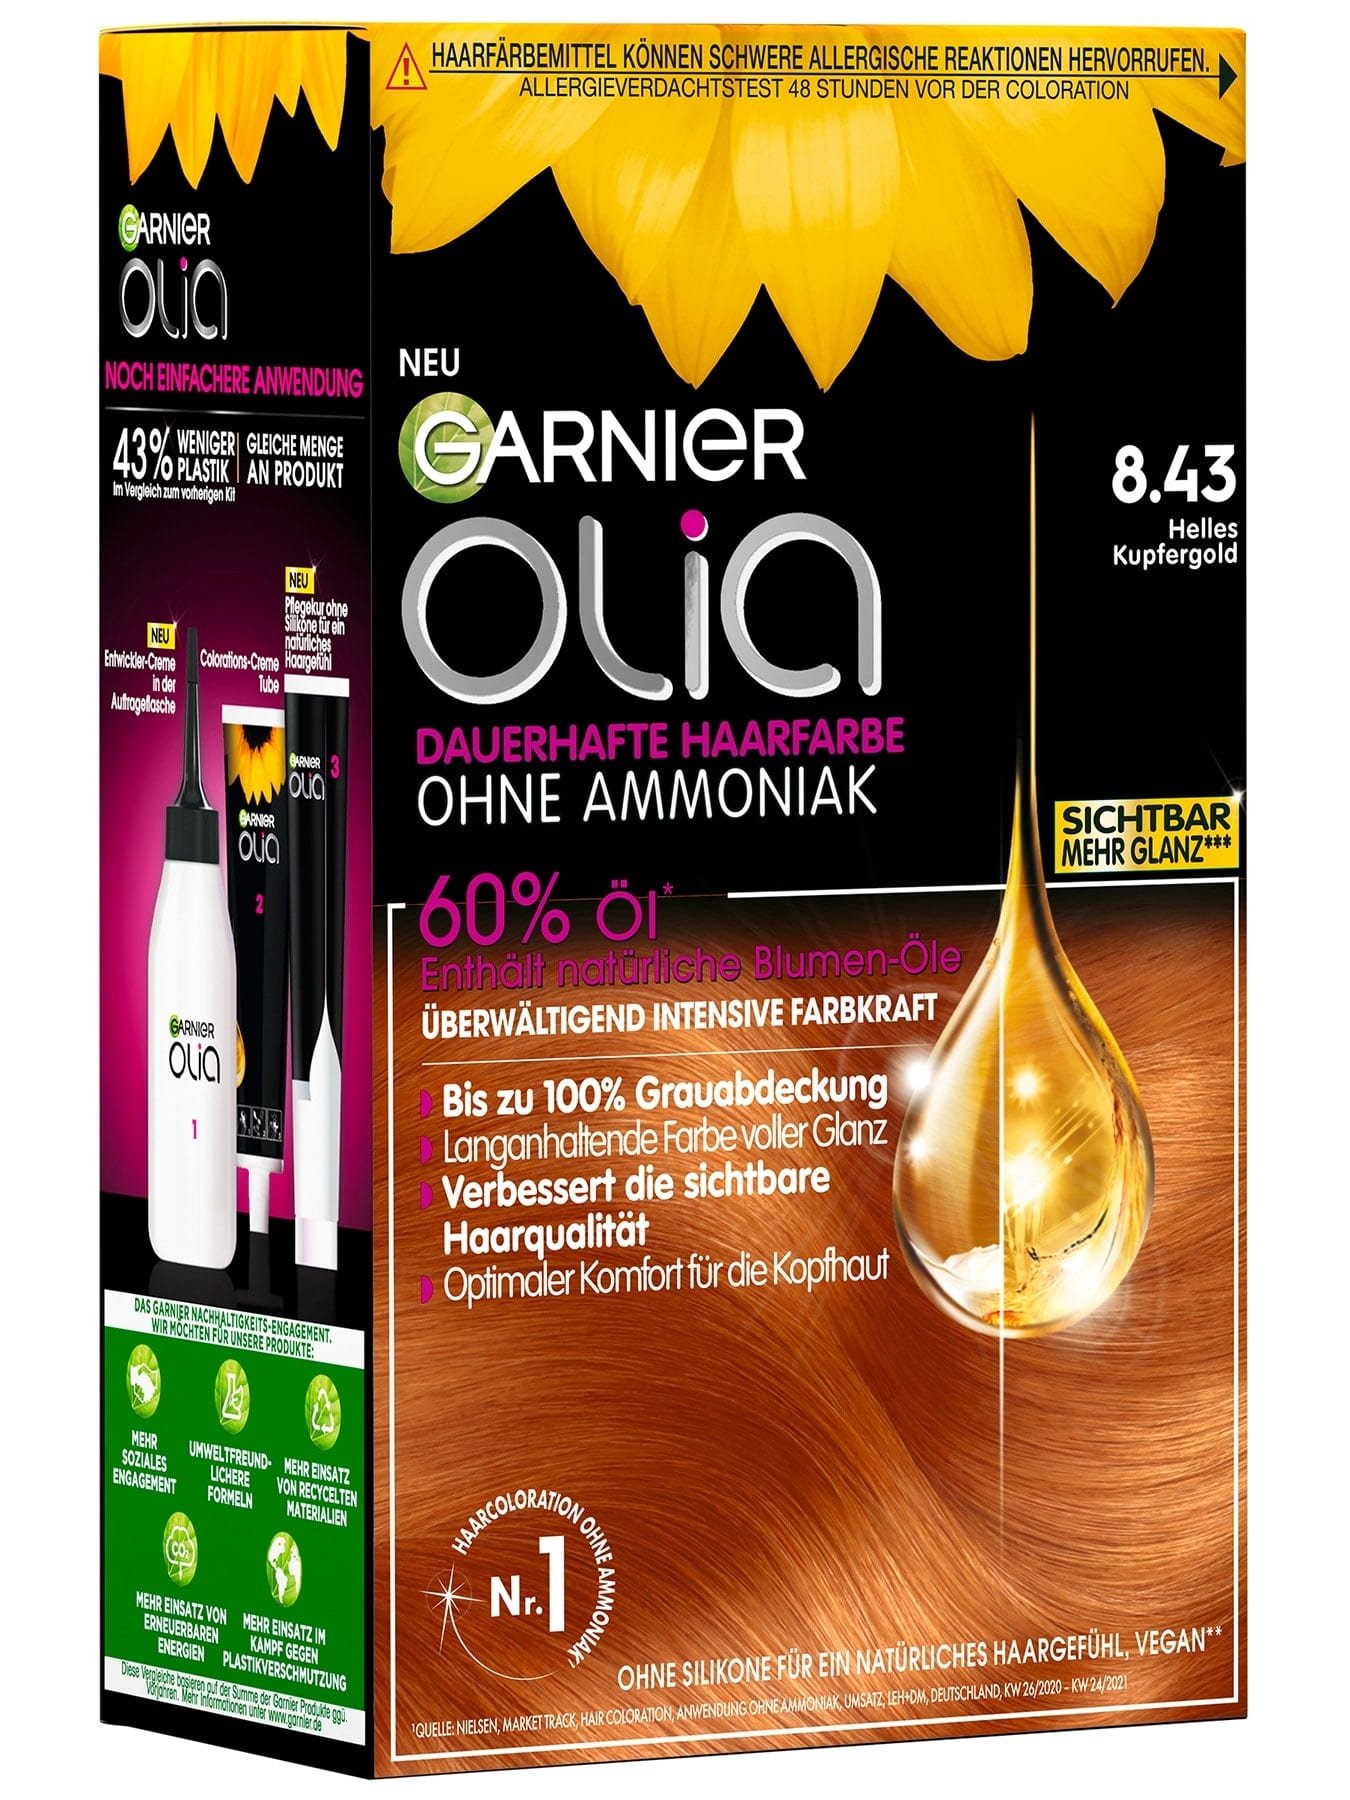 Garnier Olia 8.43 Helles Kupfergold  - Produktabbildung